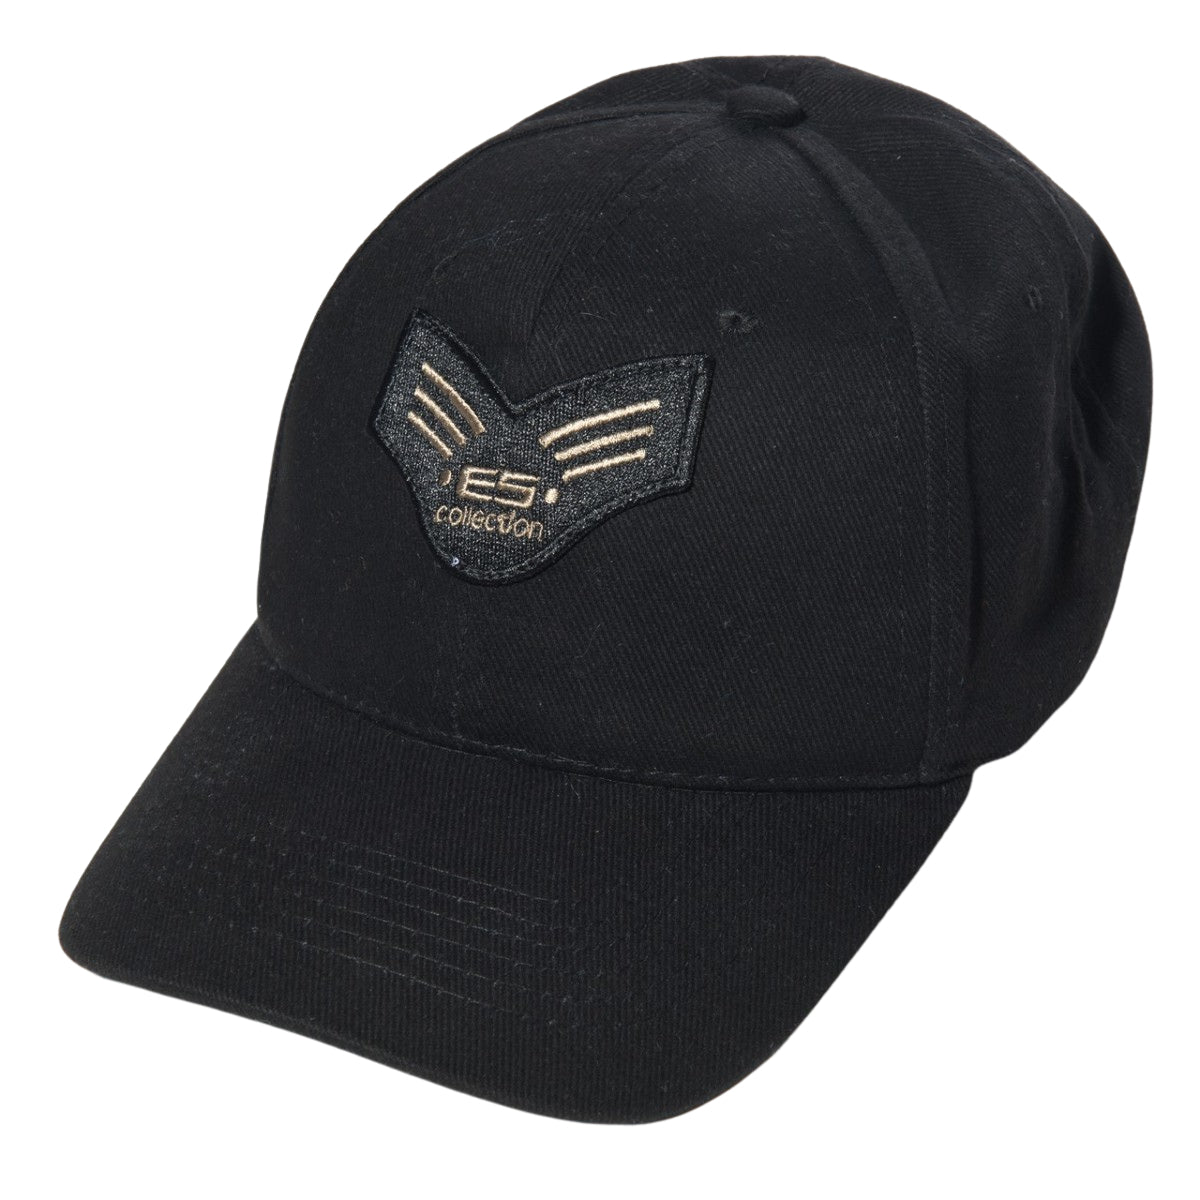 ES Collection Army Cap Black CAP006